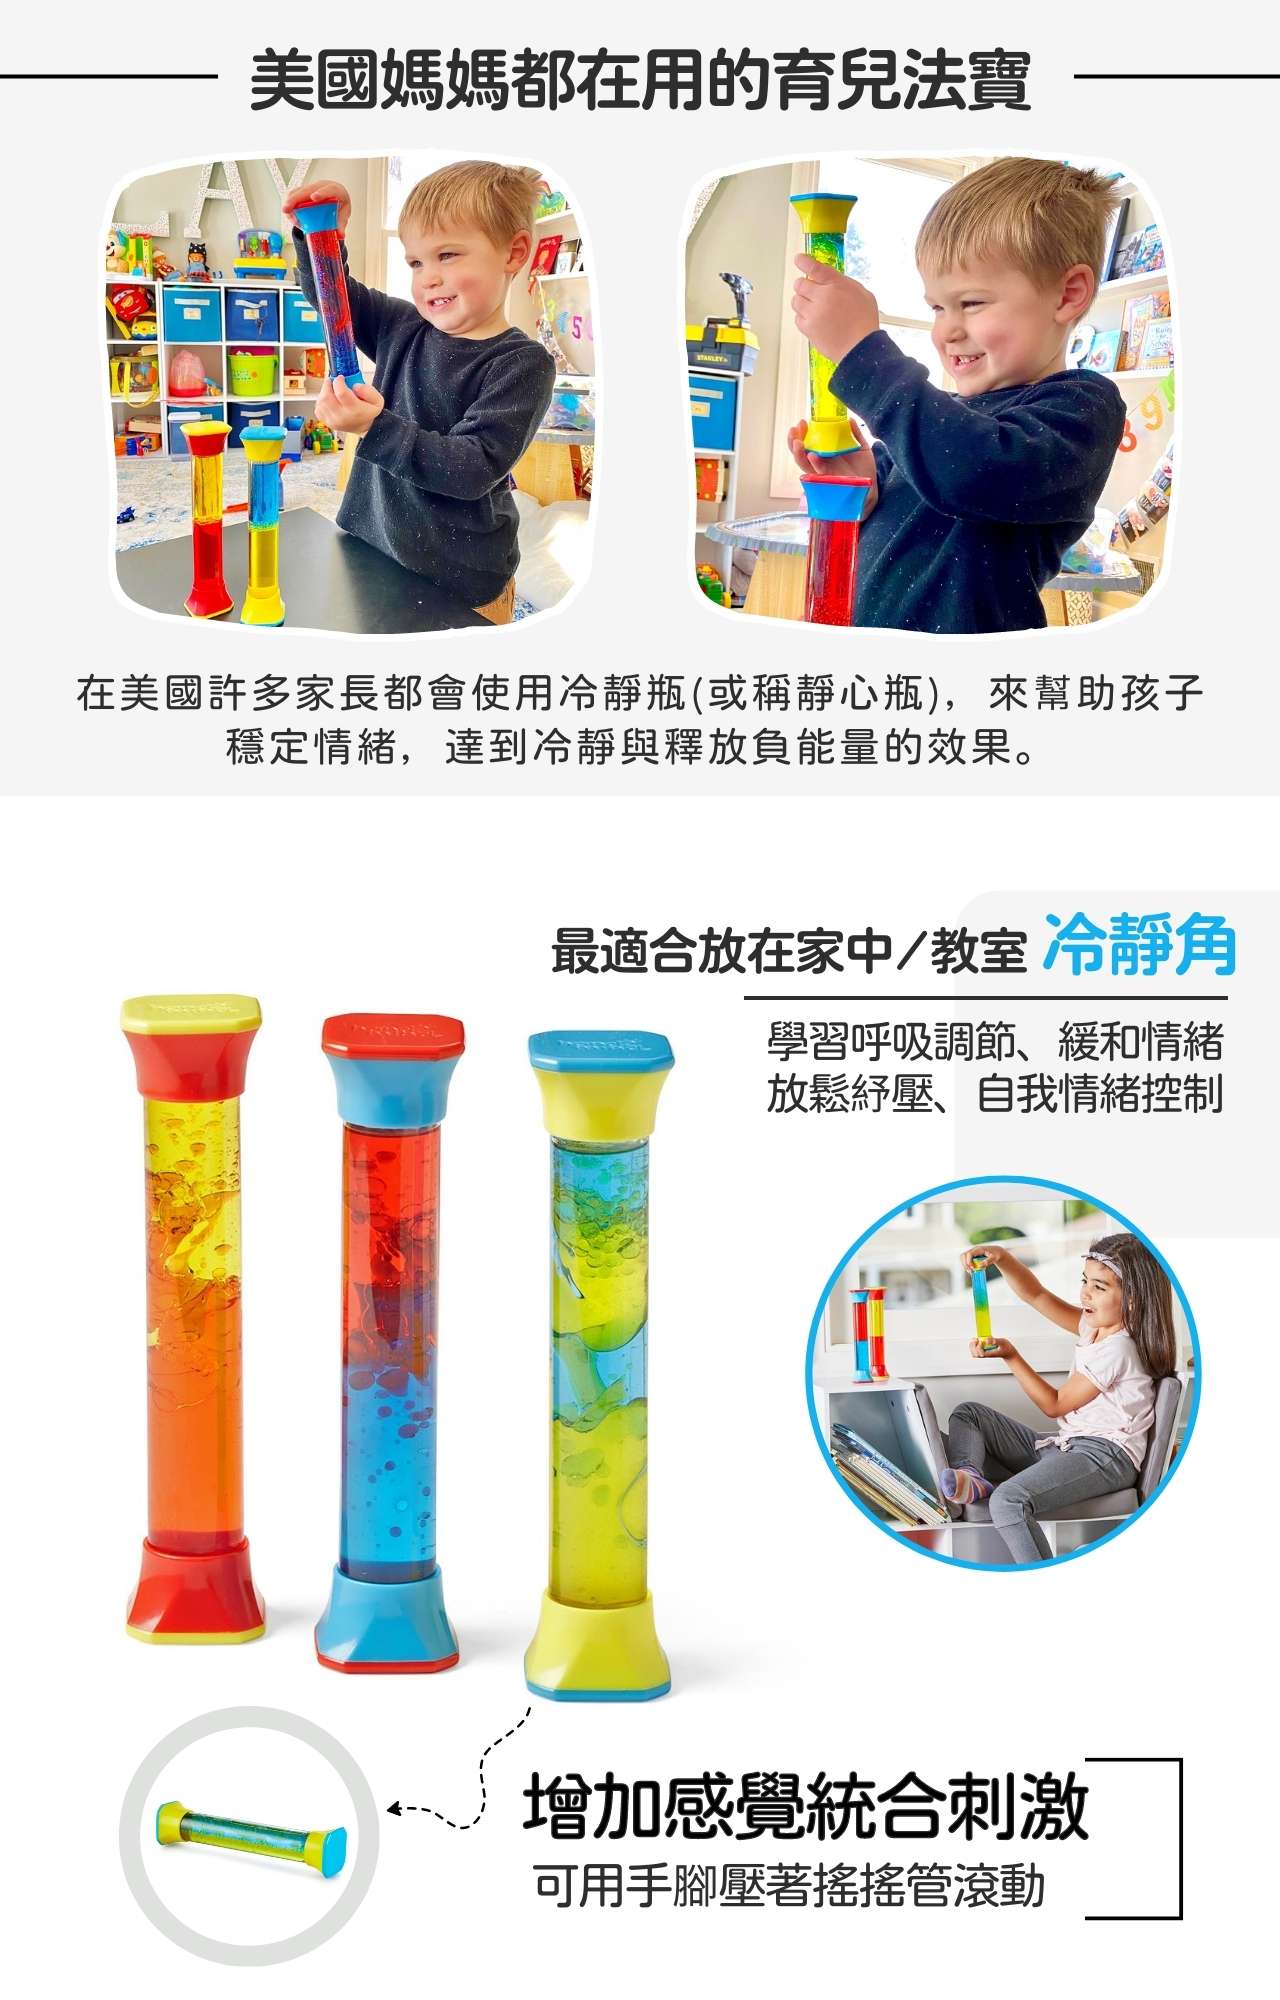 hand2mind 感統紓壓玩具-神奇變色管_產品介紹 (2)